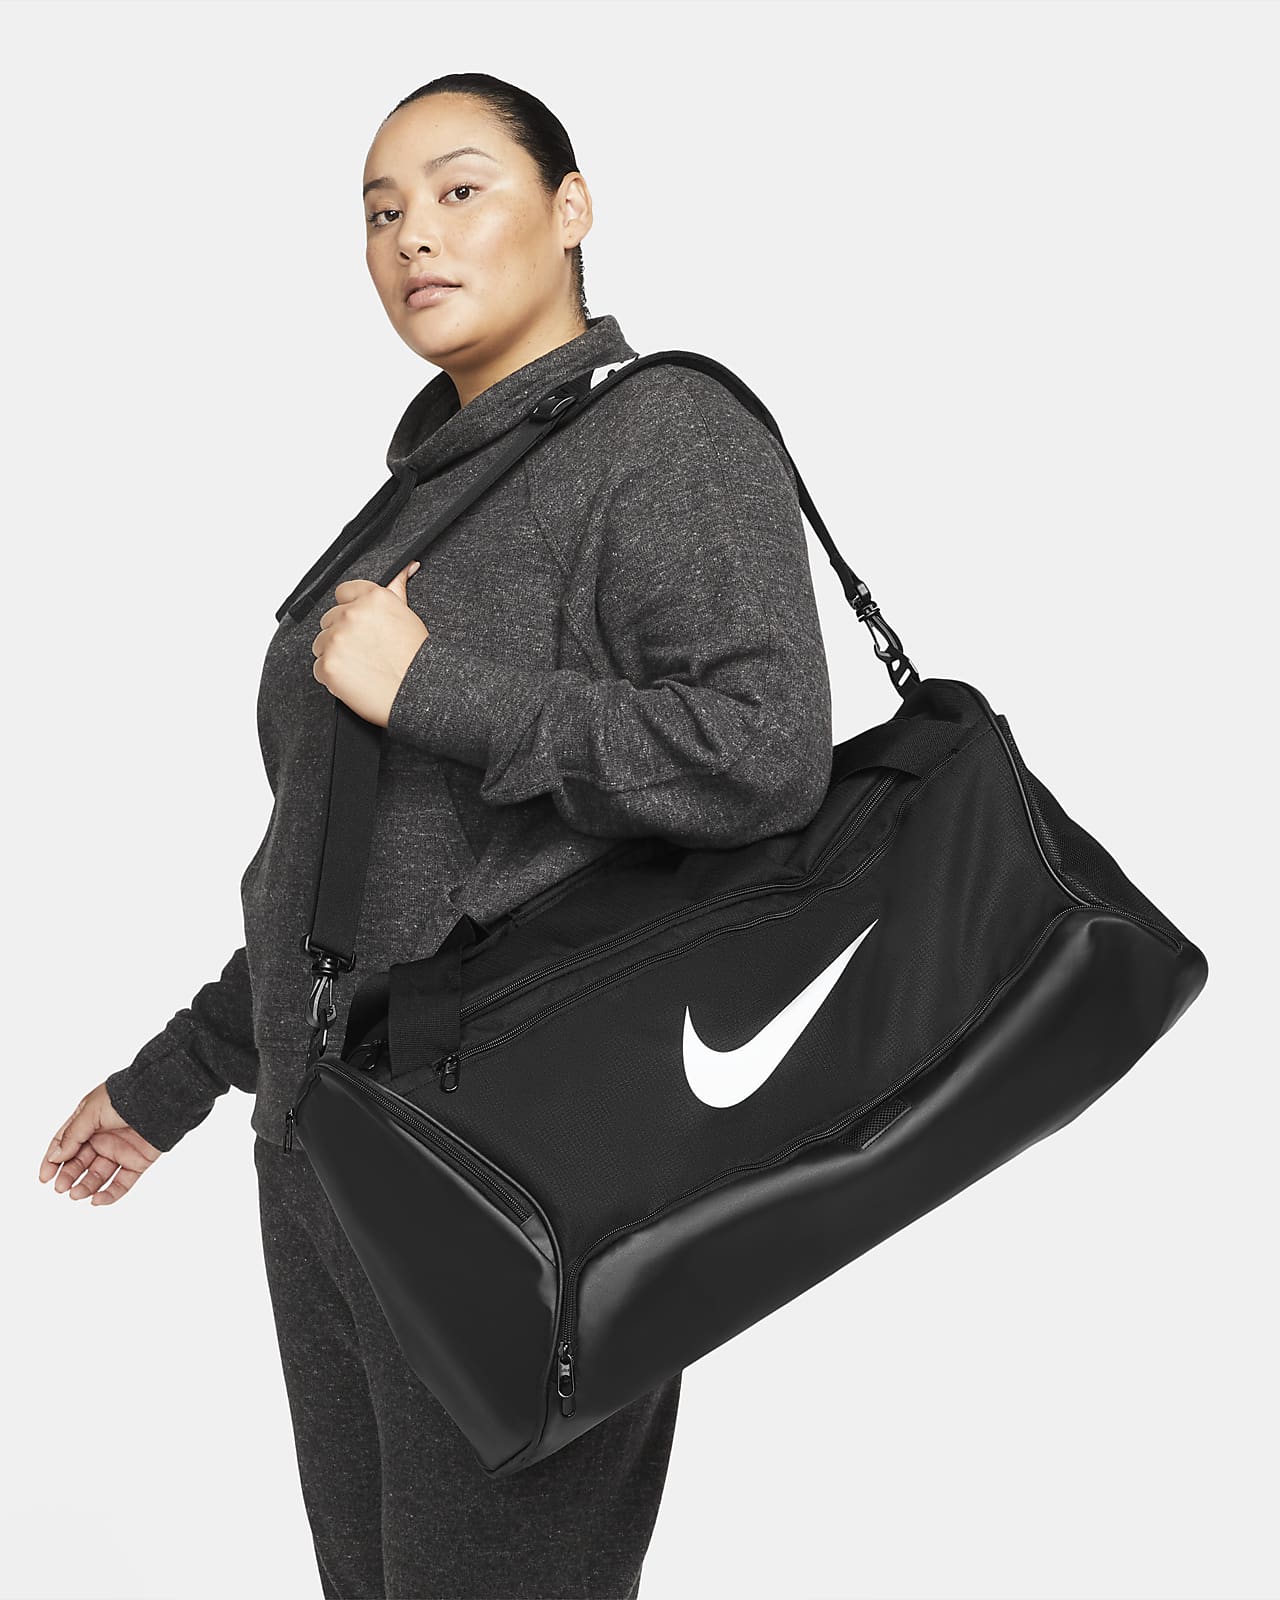 Tréninková sportovní taška Nike Brasilia 9.5 (střední, 60 l)